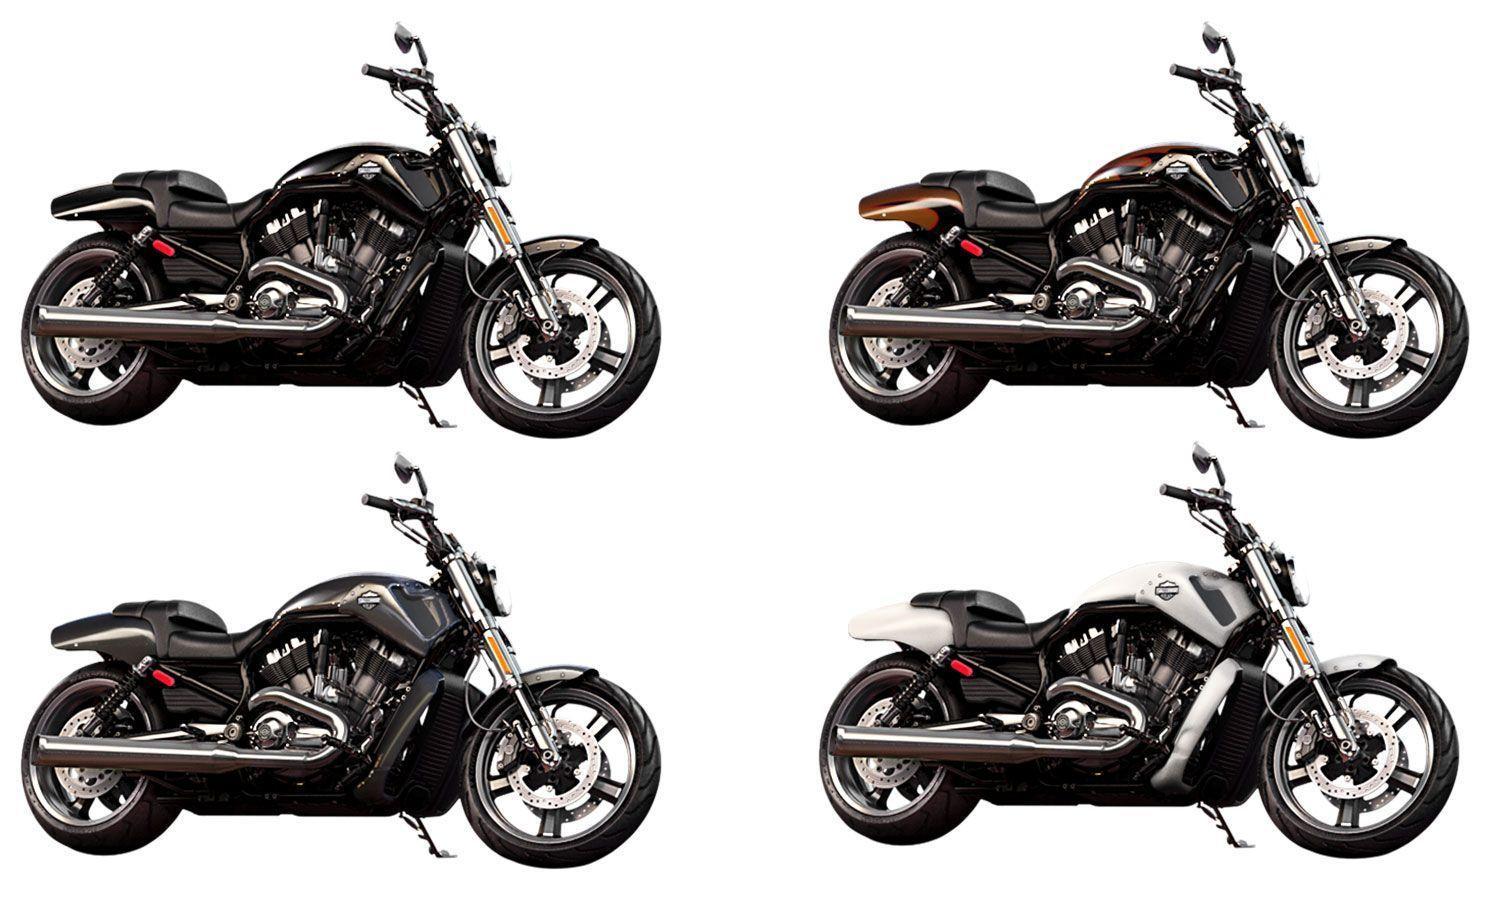 Harley Davidson VRSCF V Rod Muscle Review